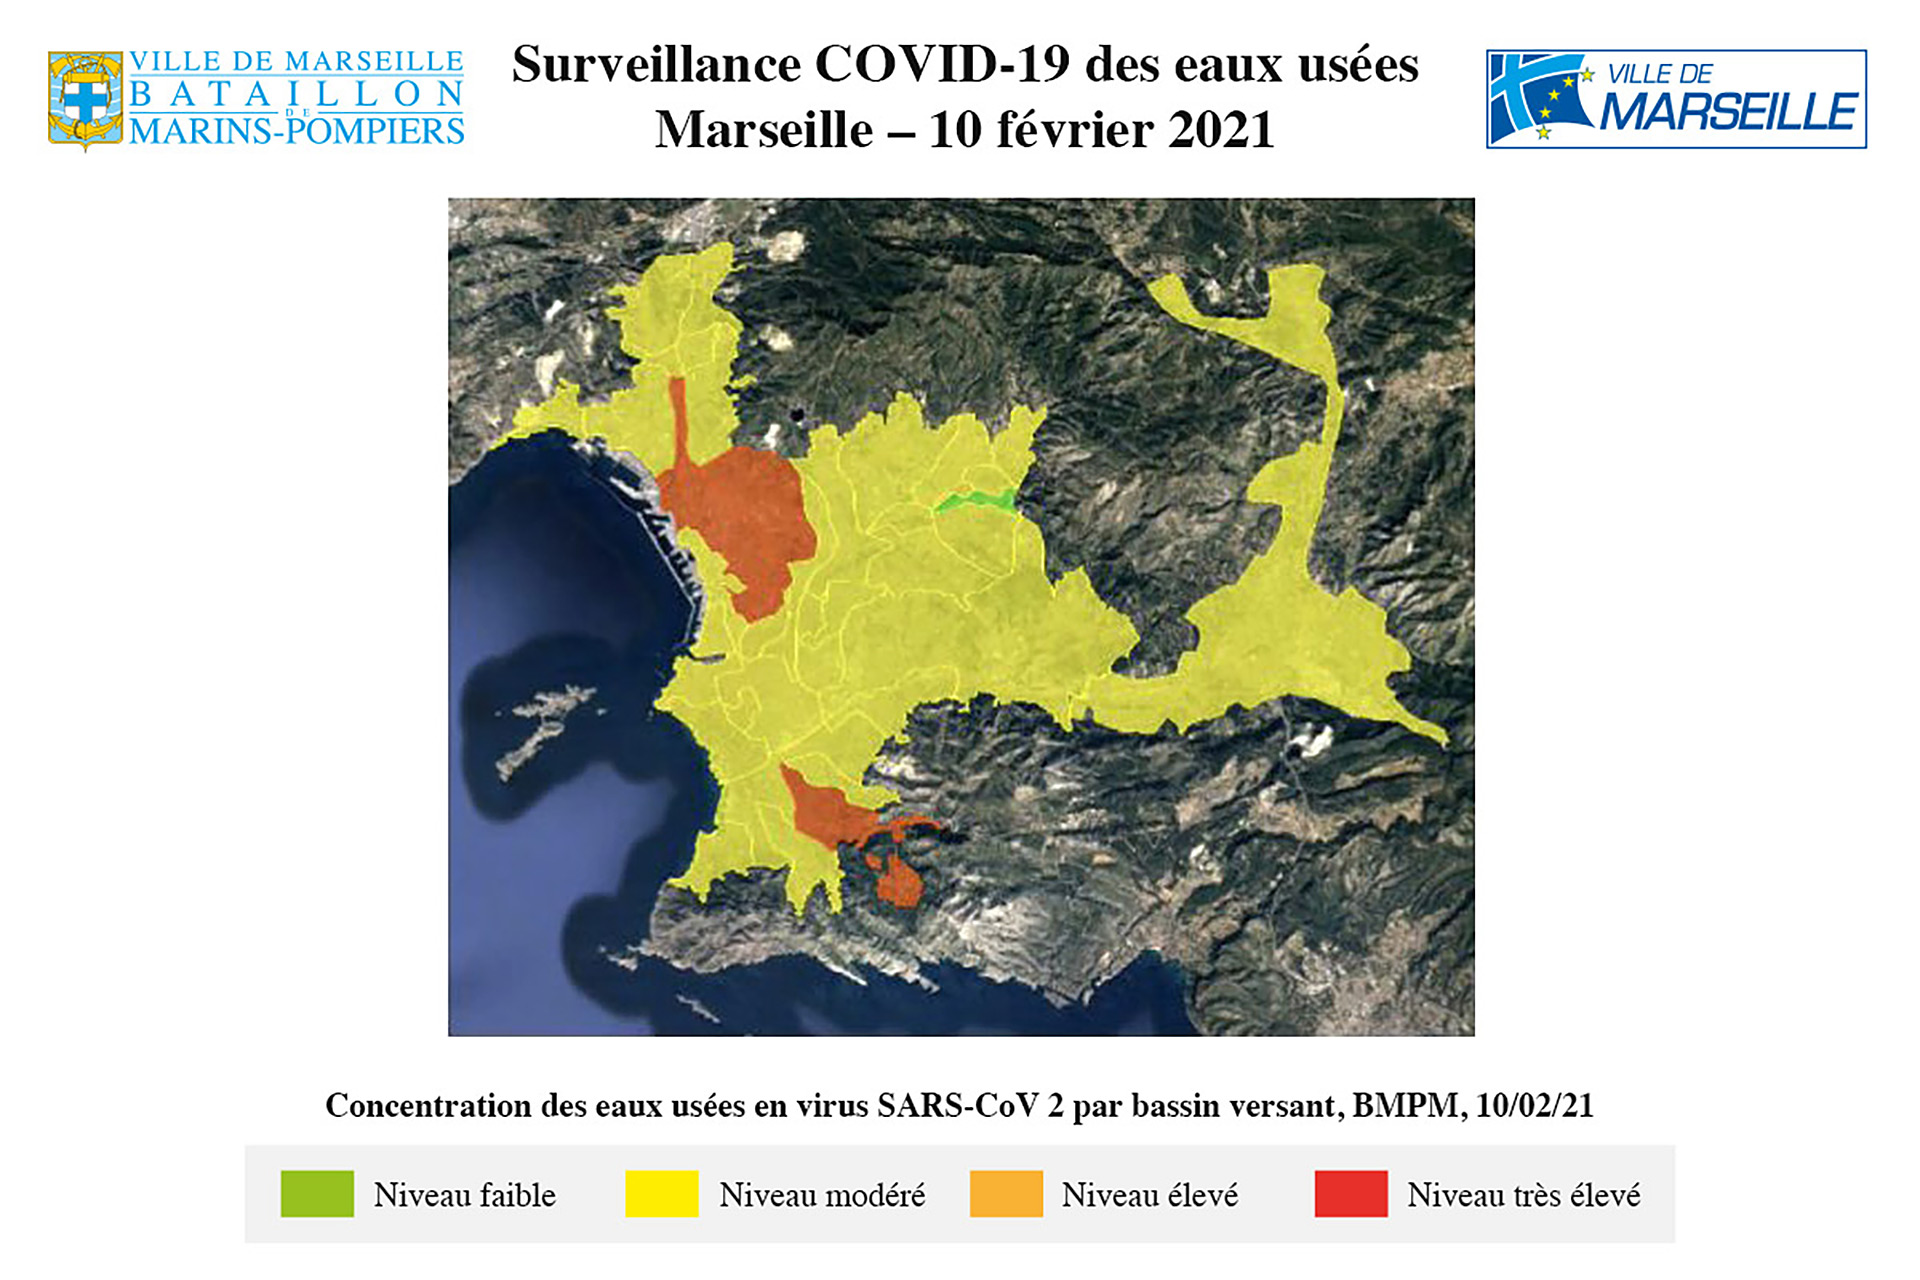 Surveillance COVID-19 des eaux usées Marseille - 10 février 2021